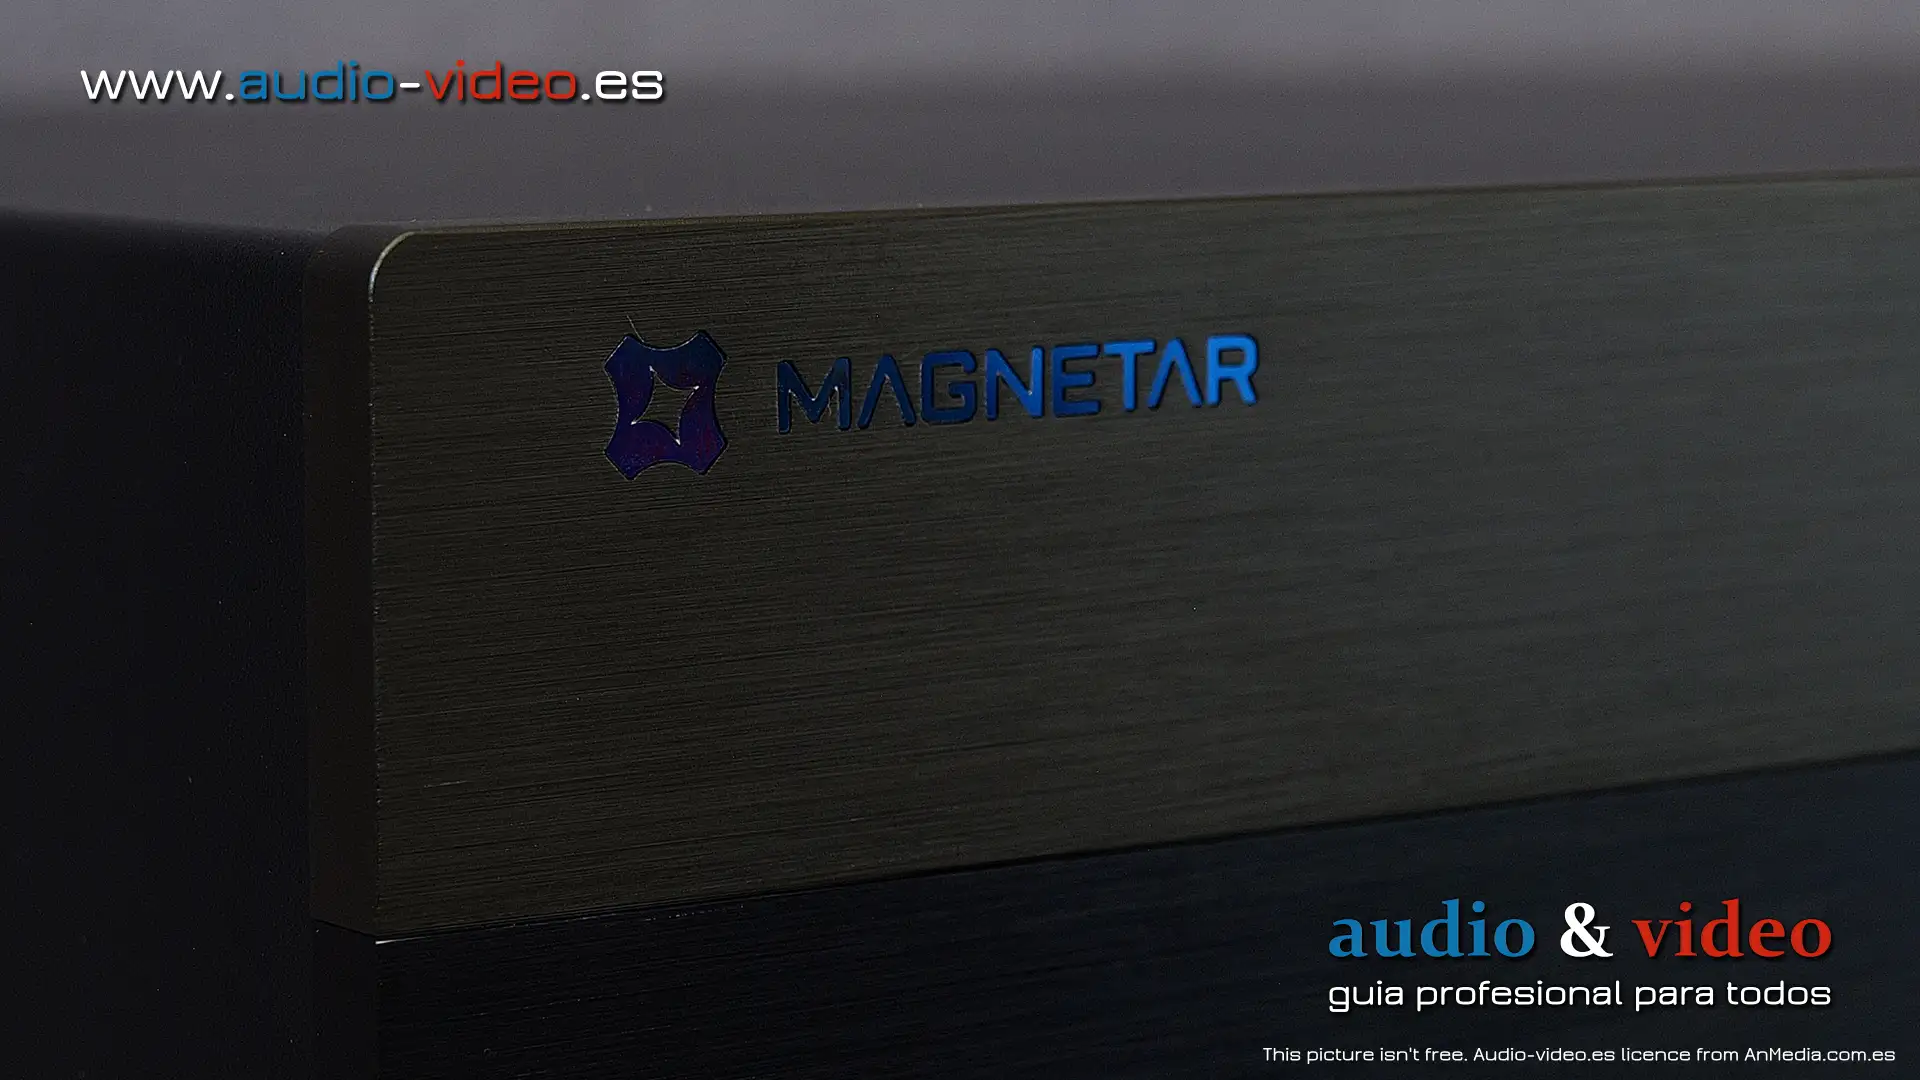 Magnetar UDP800 - logo flotante